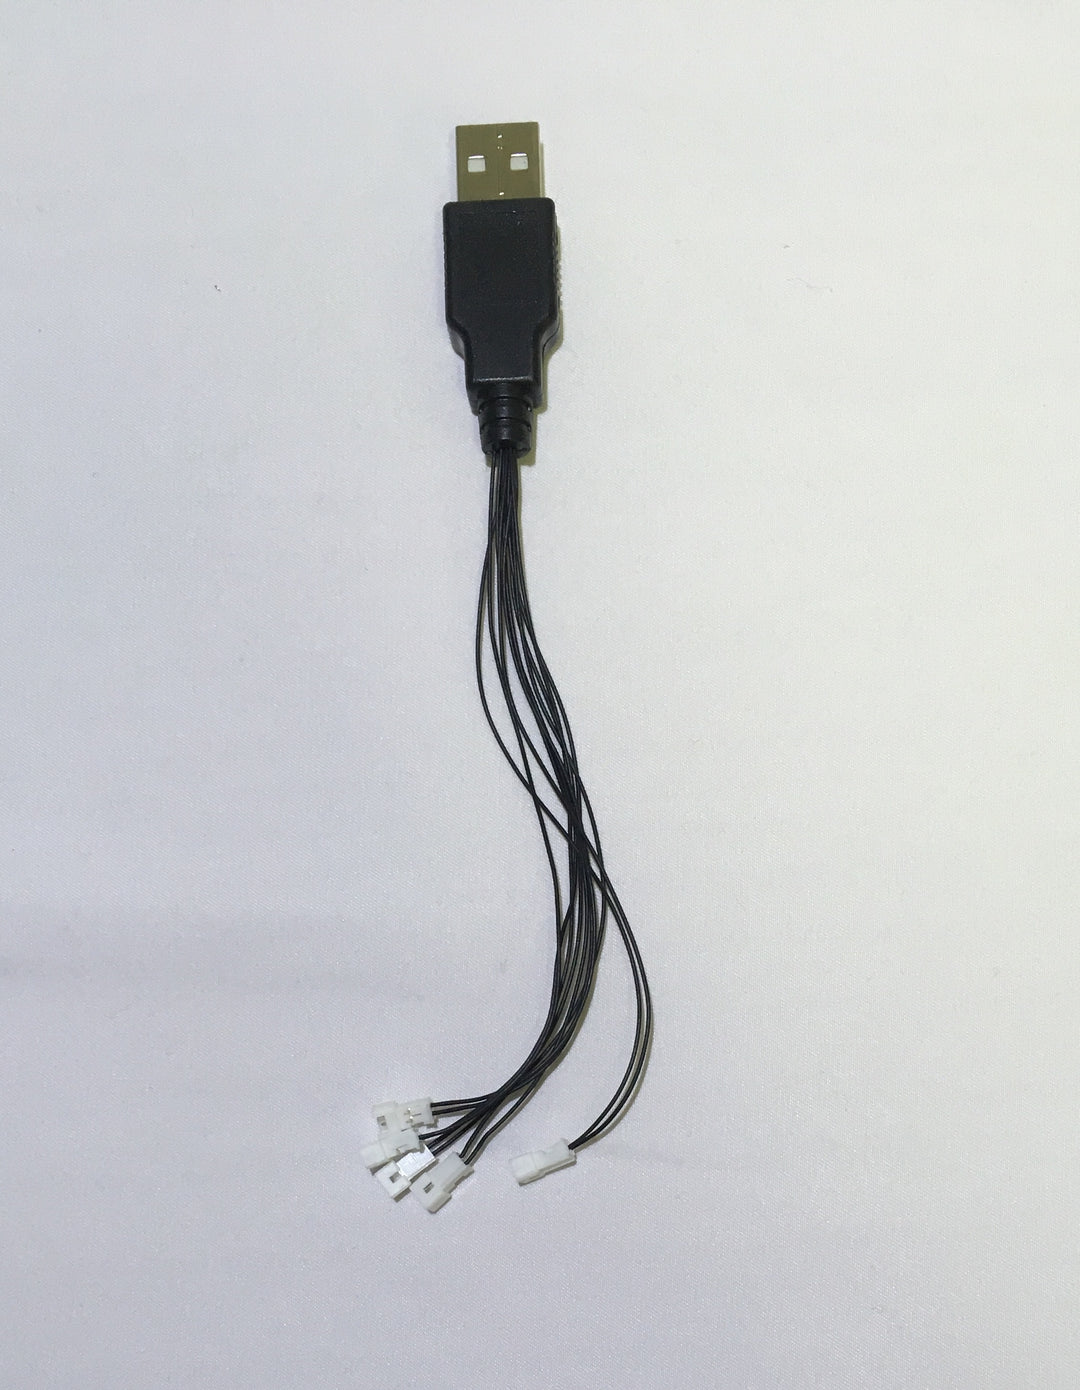 Five Mini plugs to USB LIGHT LINX by Brick Loot.